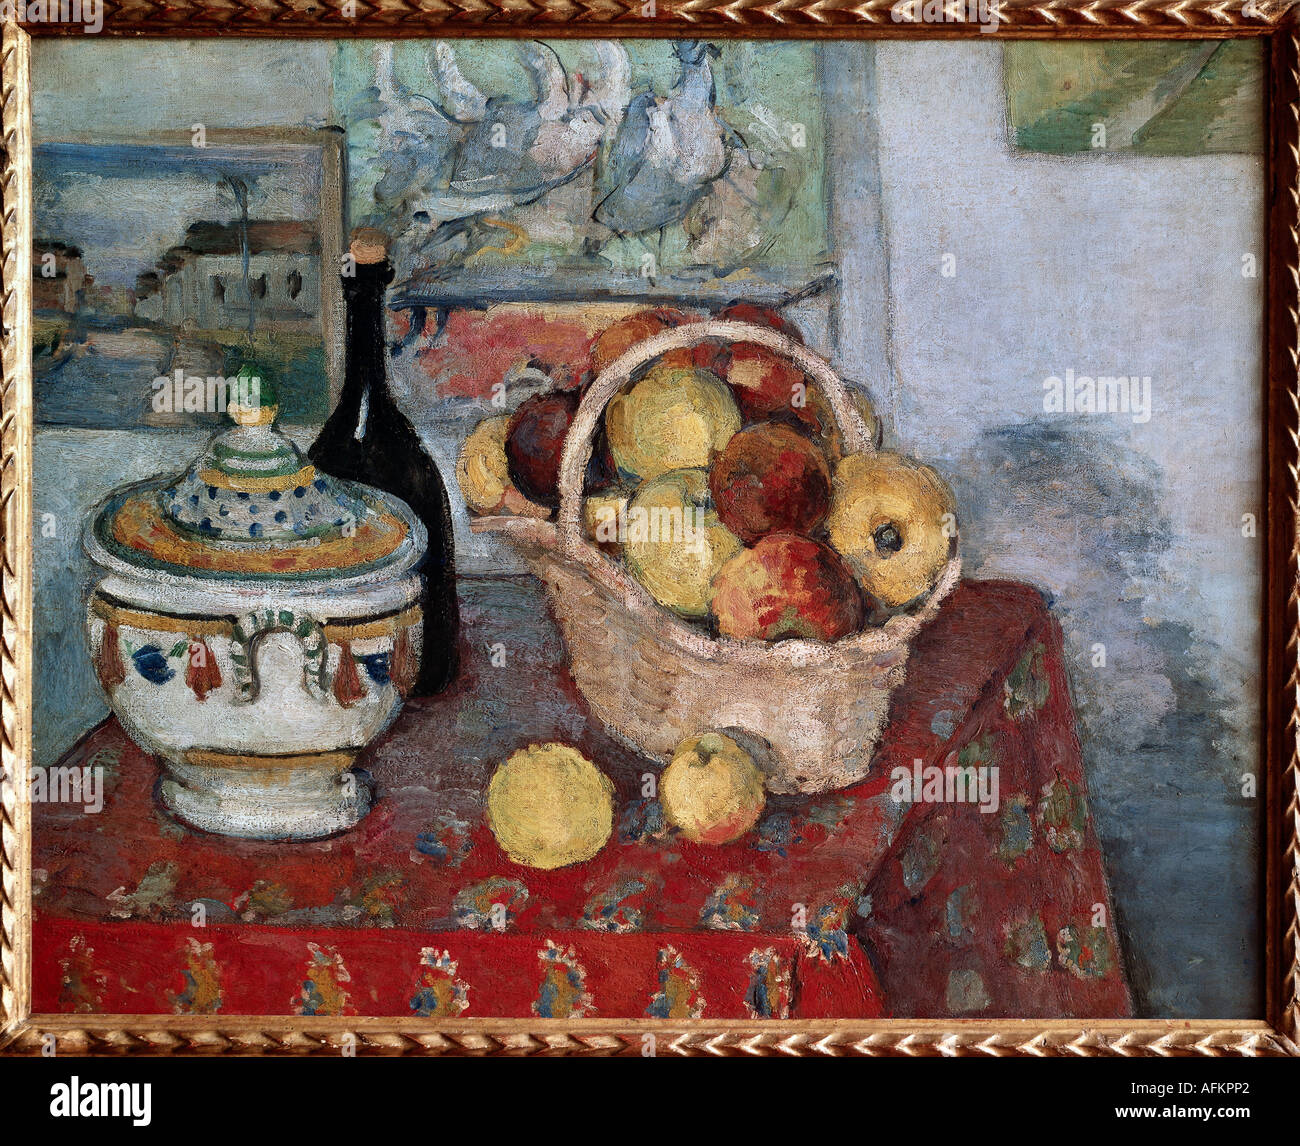 "Fine Arts, Cezanne, Paul (19.1.1839 - 22.10.1906), Malerei,"Stilleben mit Suppenterrine", ca. 1877, Öl auf Leinwand, Musée Stockfoto